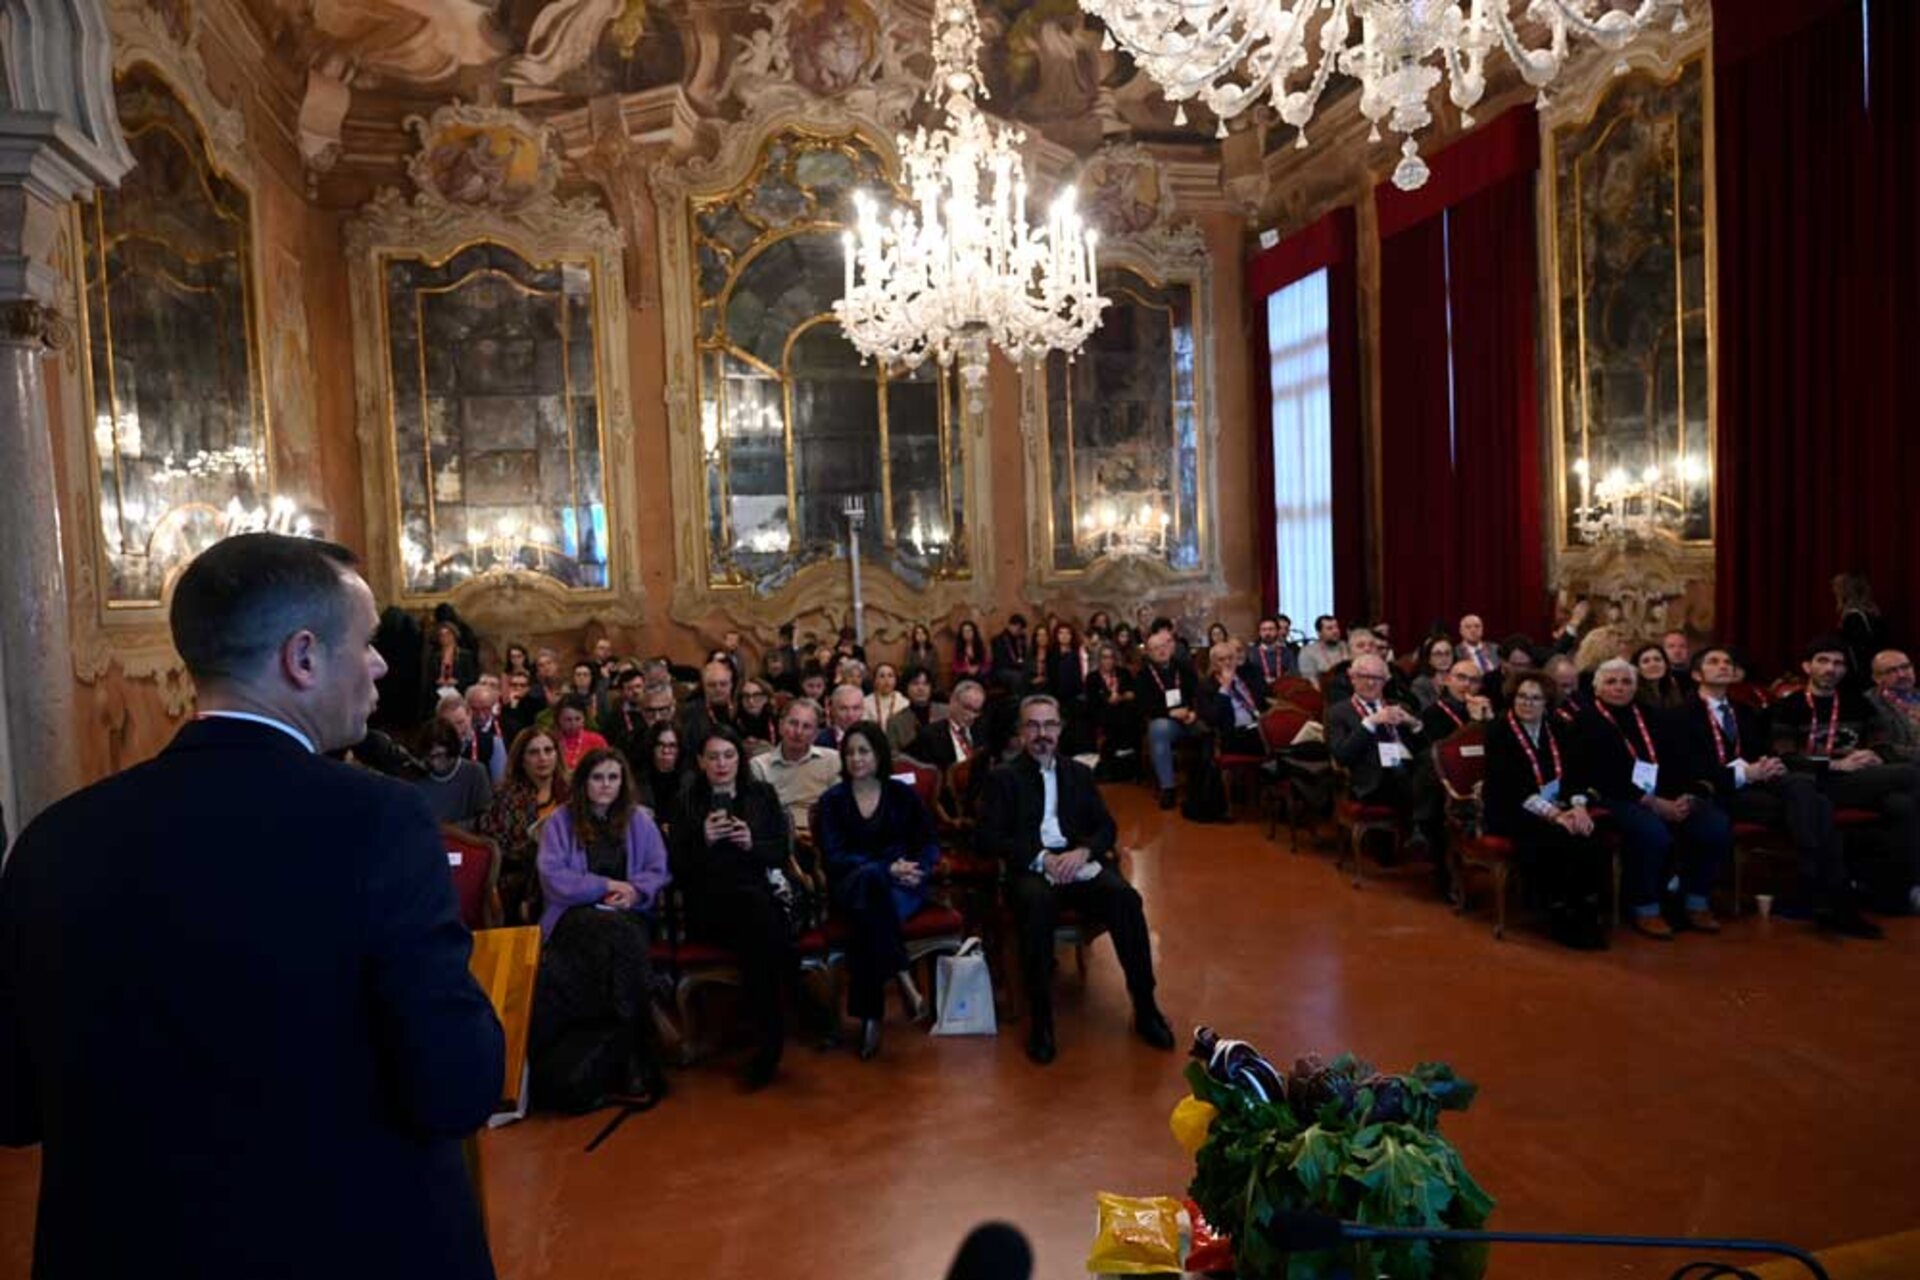 Mosaico: një grumbullues i paparë inovacioni nga Universiteti Ca' Foscari i Venecias për të bashkuar përvojat dhe aftësitë shumëdisiplinore